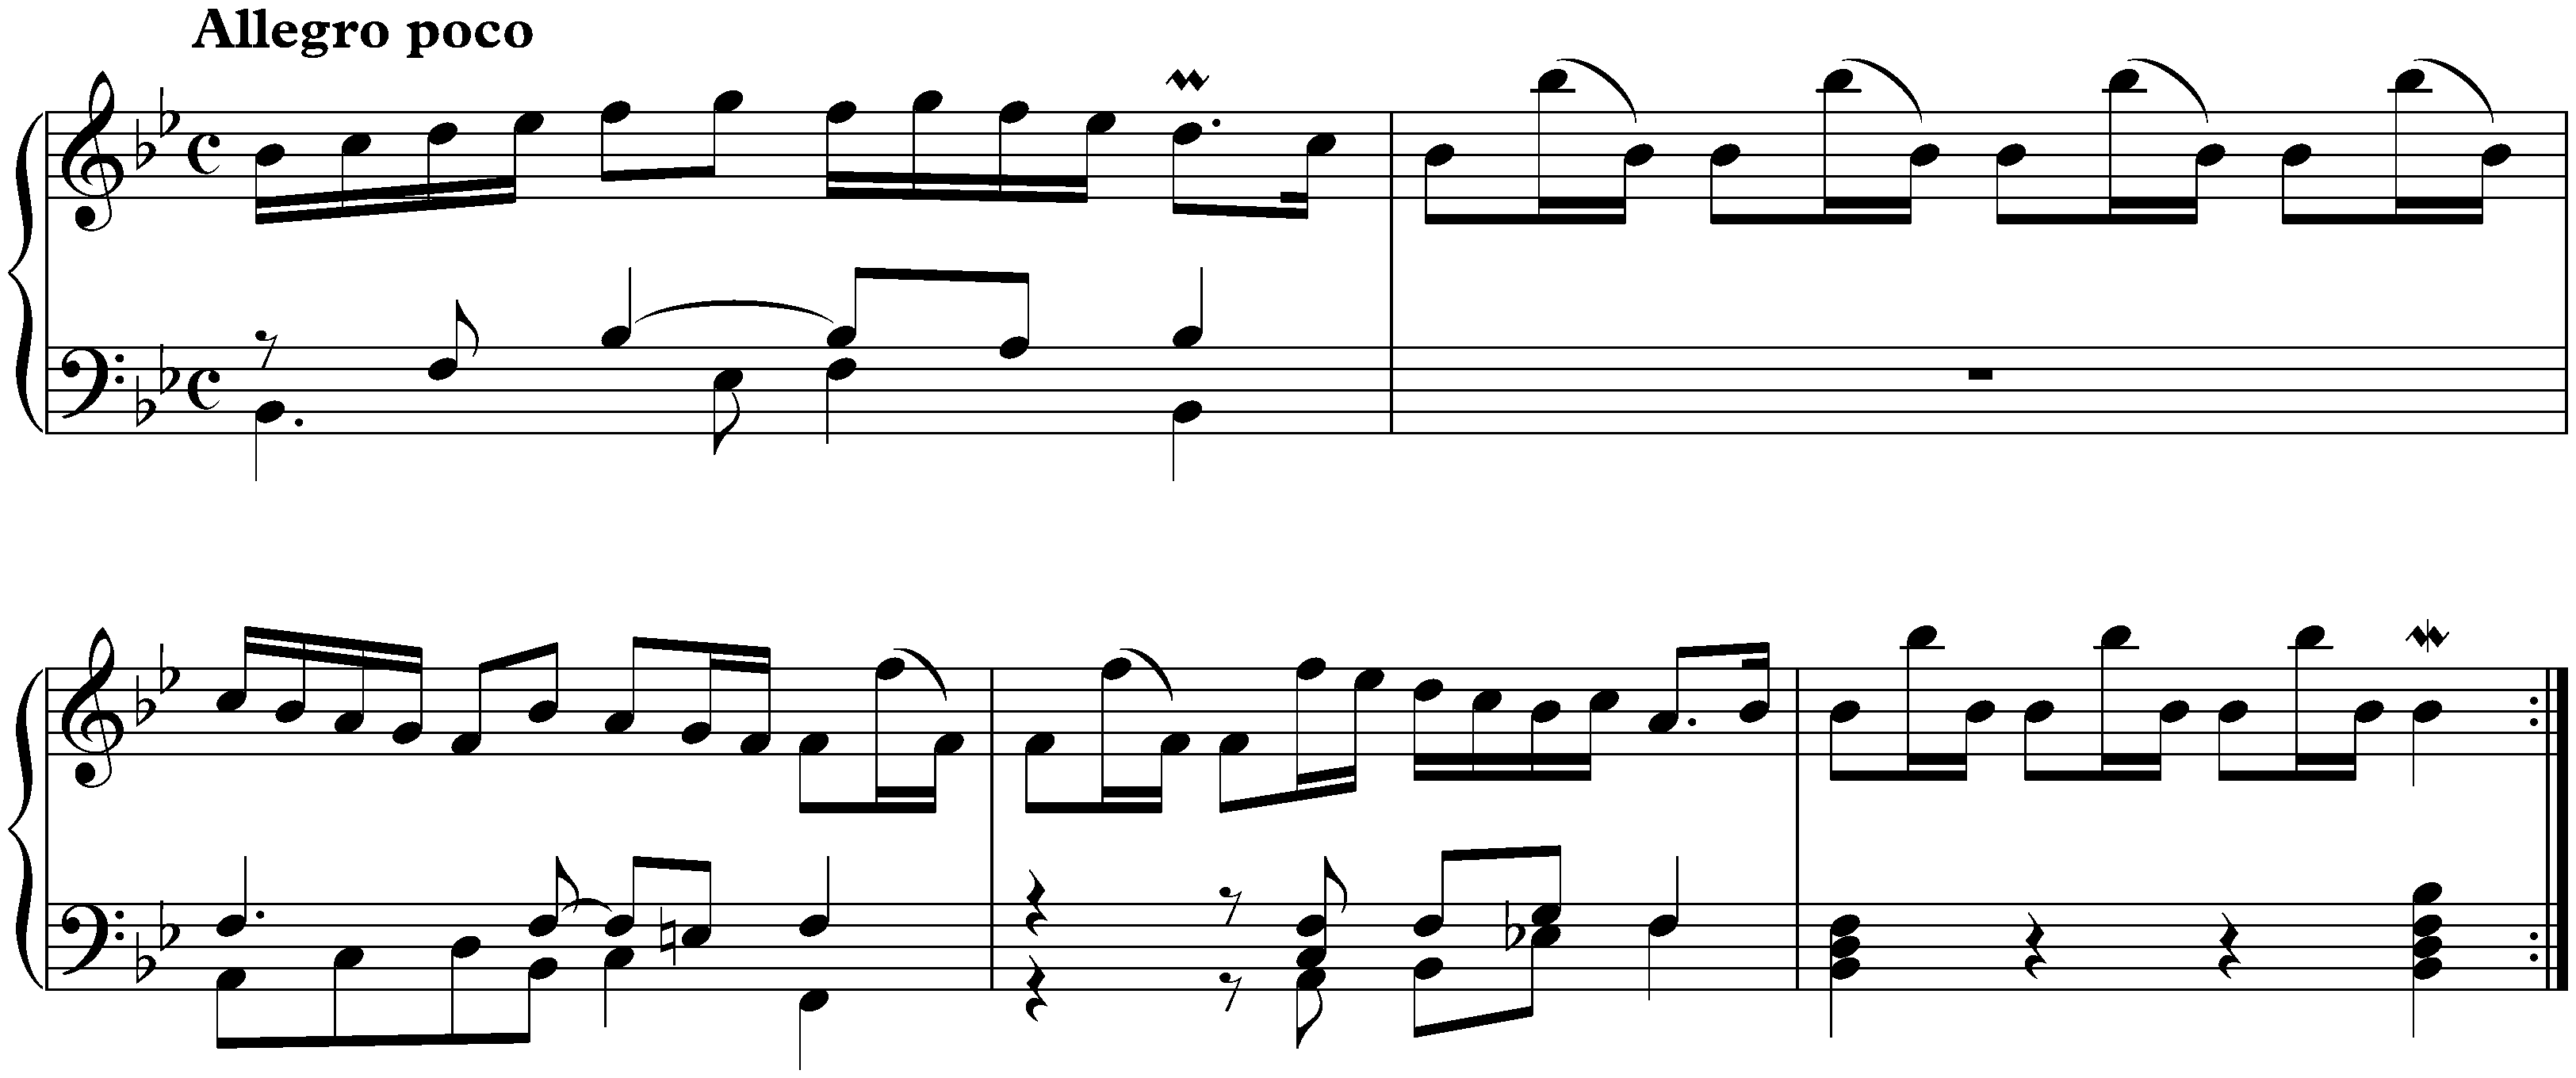 Capriccio sopra la lontananza del fratello dilettissimo in B-flat major, BWV 992; 5. Aria di Postiglione: Allegro poco